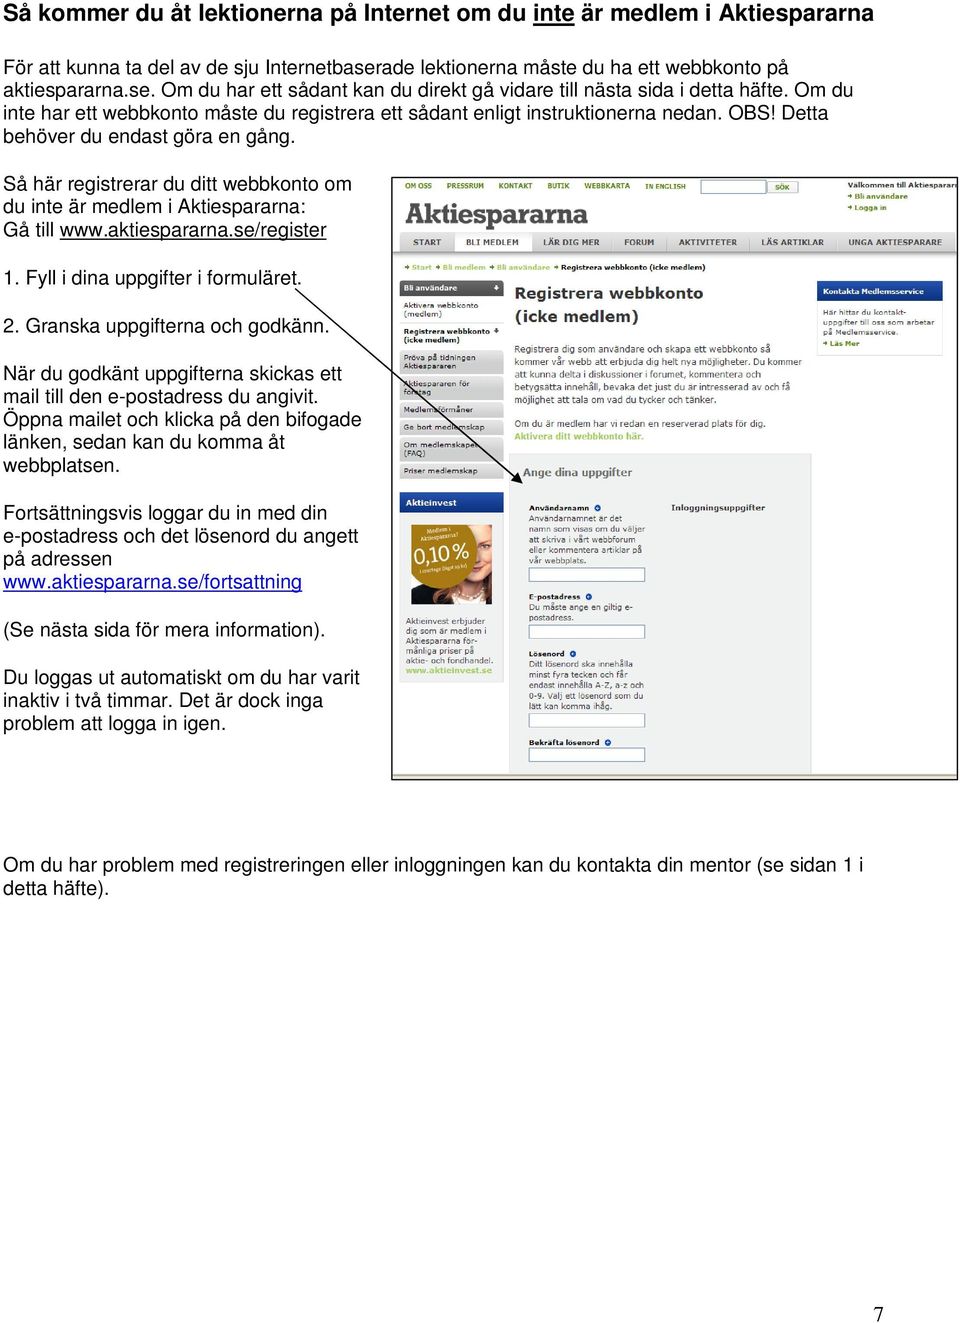 Så här registrerar du ditt webbkonto om du inte är medlem i Aktiespararna: Gå till www.aktiespararna.se/register 1. Fyll i dina uppgifter i formuläret. 2. Granska uppgifterna och godkänn.